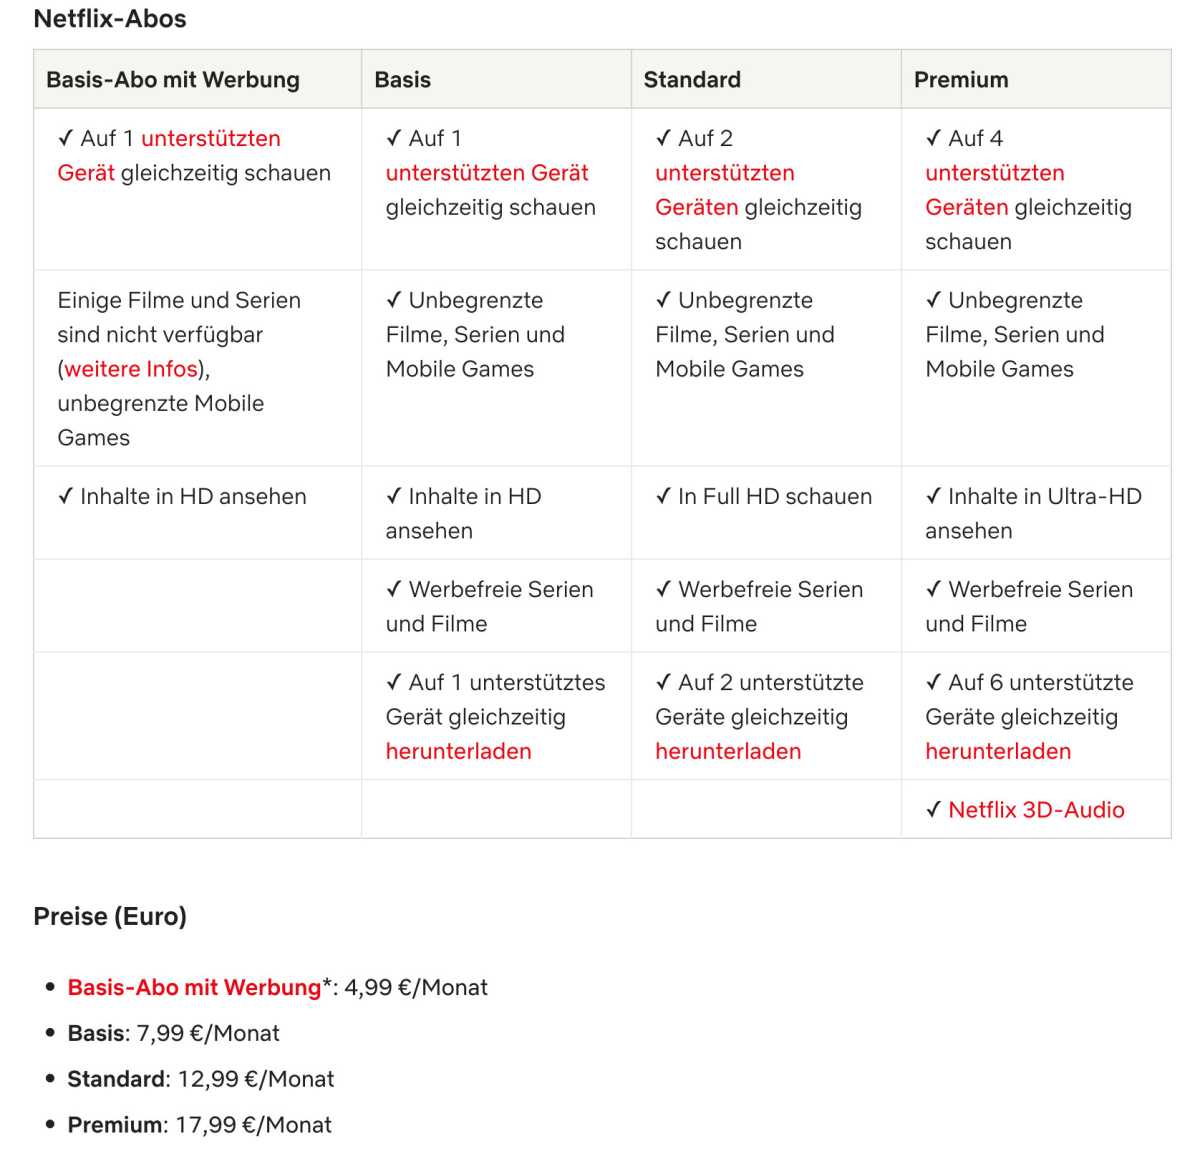 Netflix: Neues Top-Feature nur noch für Premium-Abo – alle anderen Abos verlieren diesen Vorteil